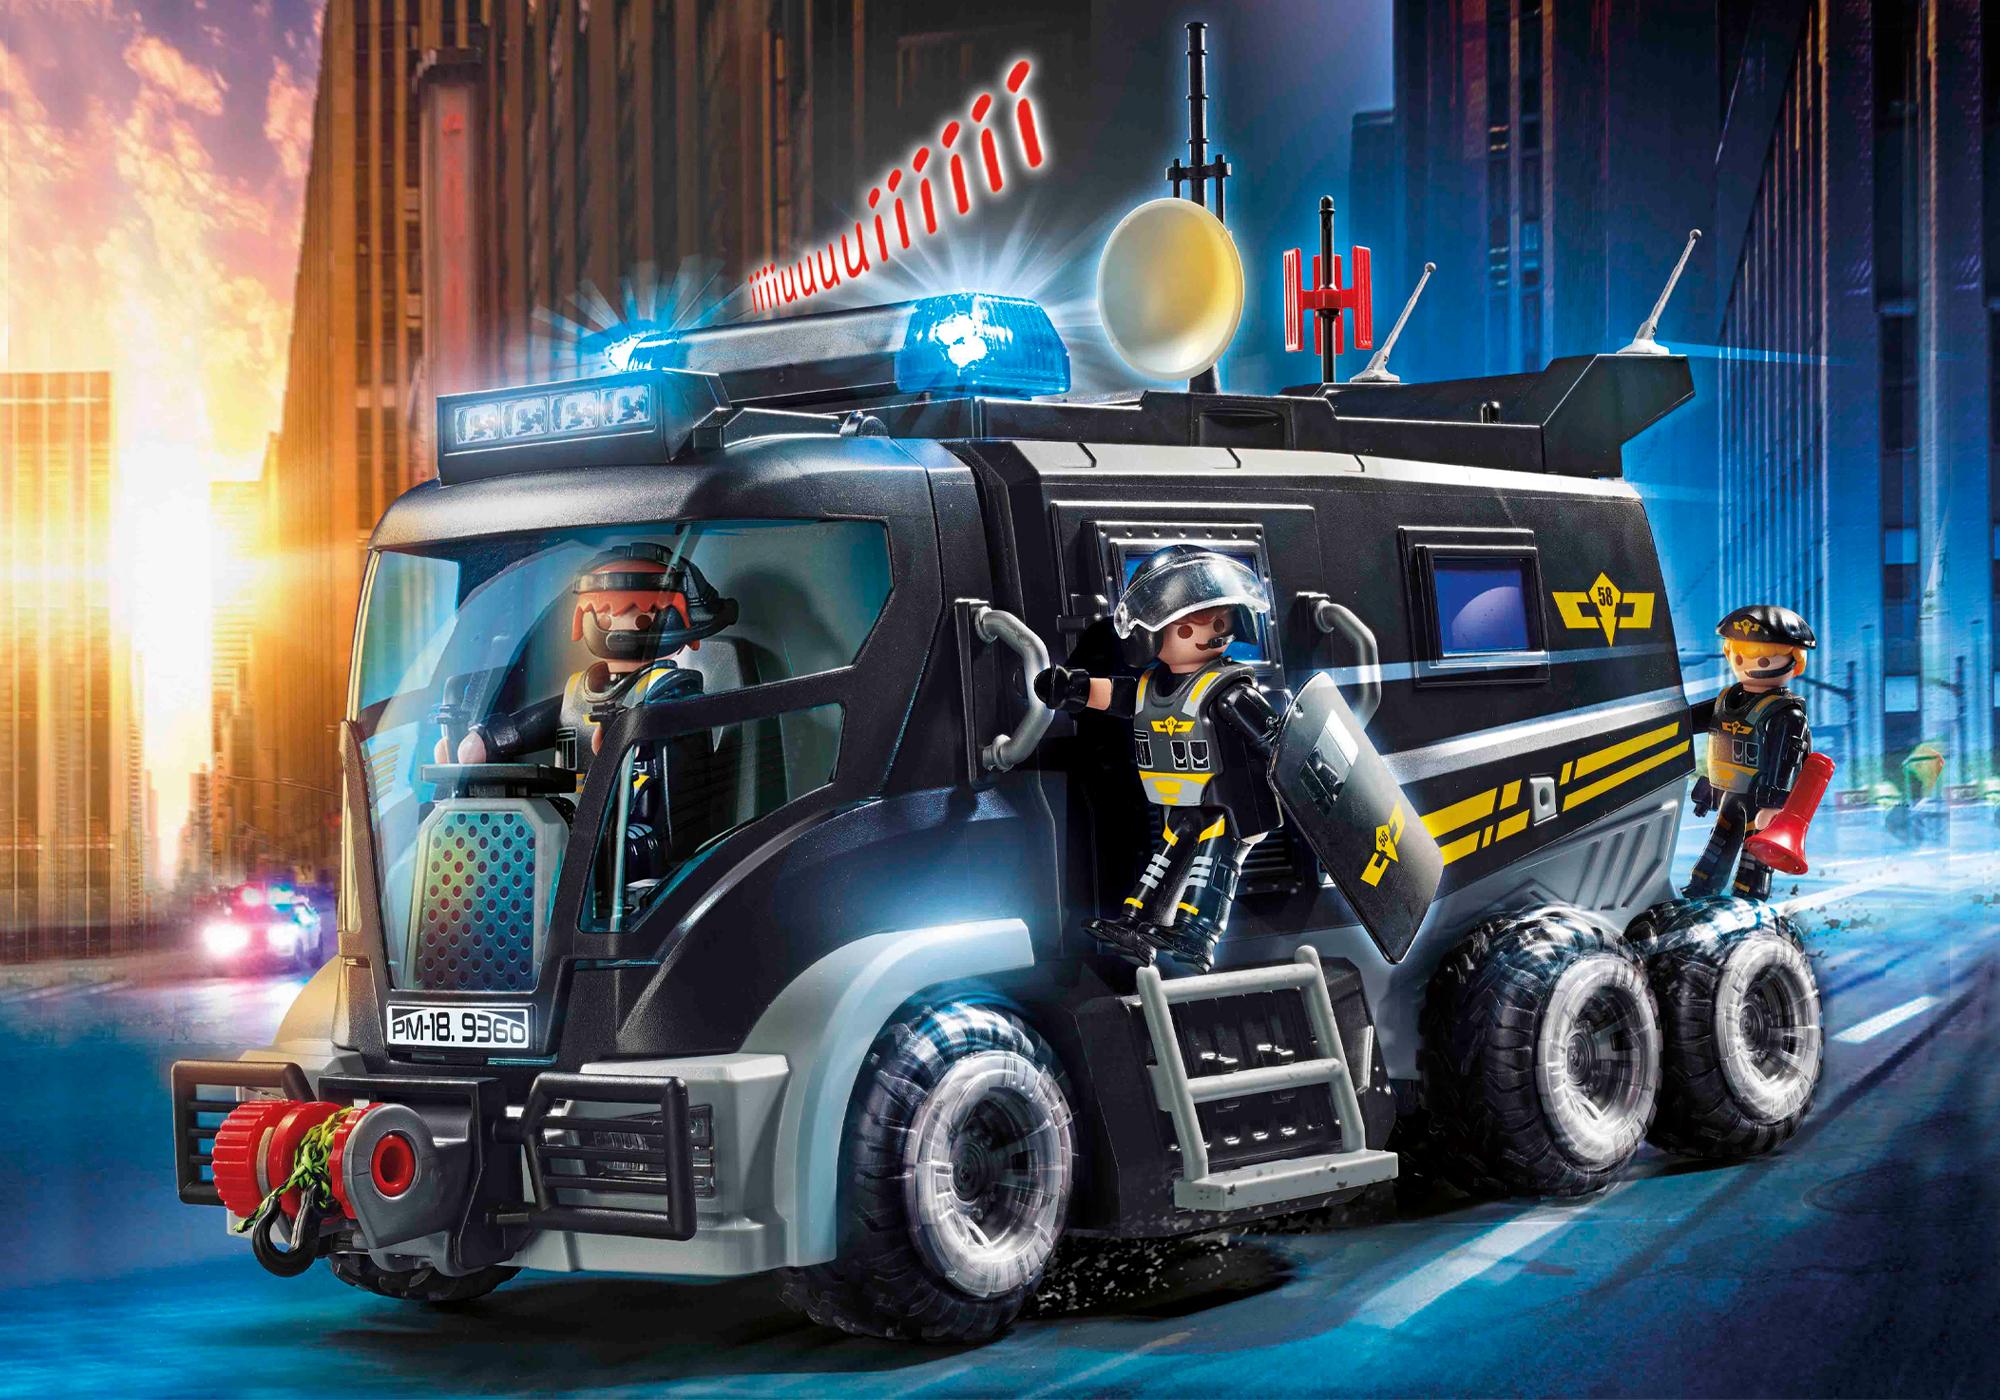 camion swat playmobil